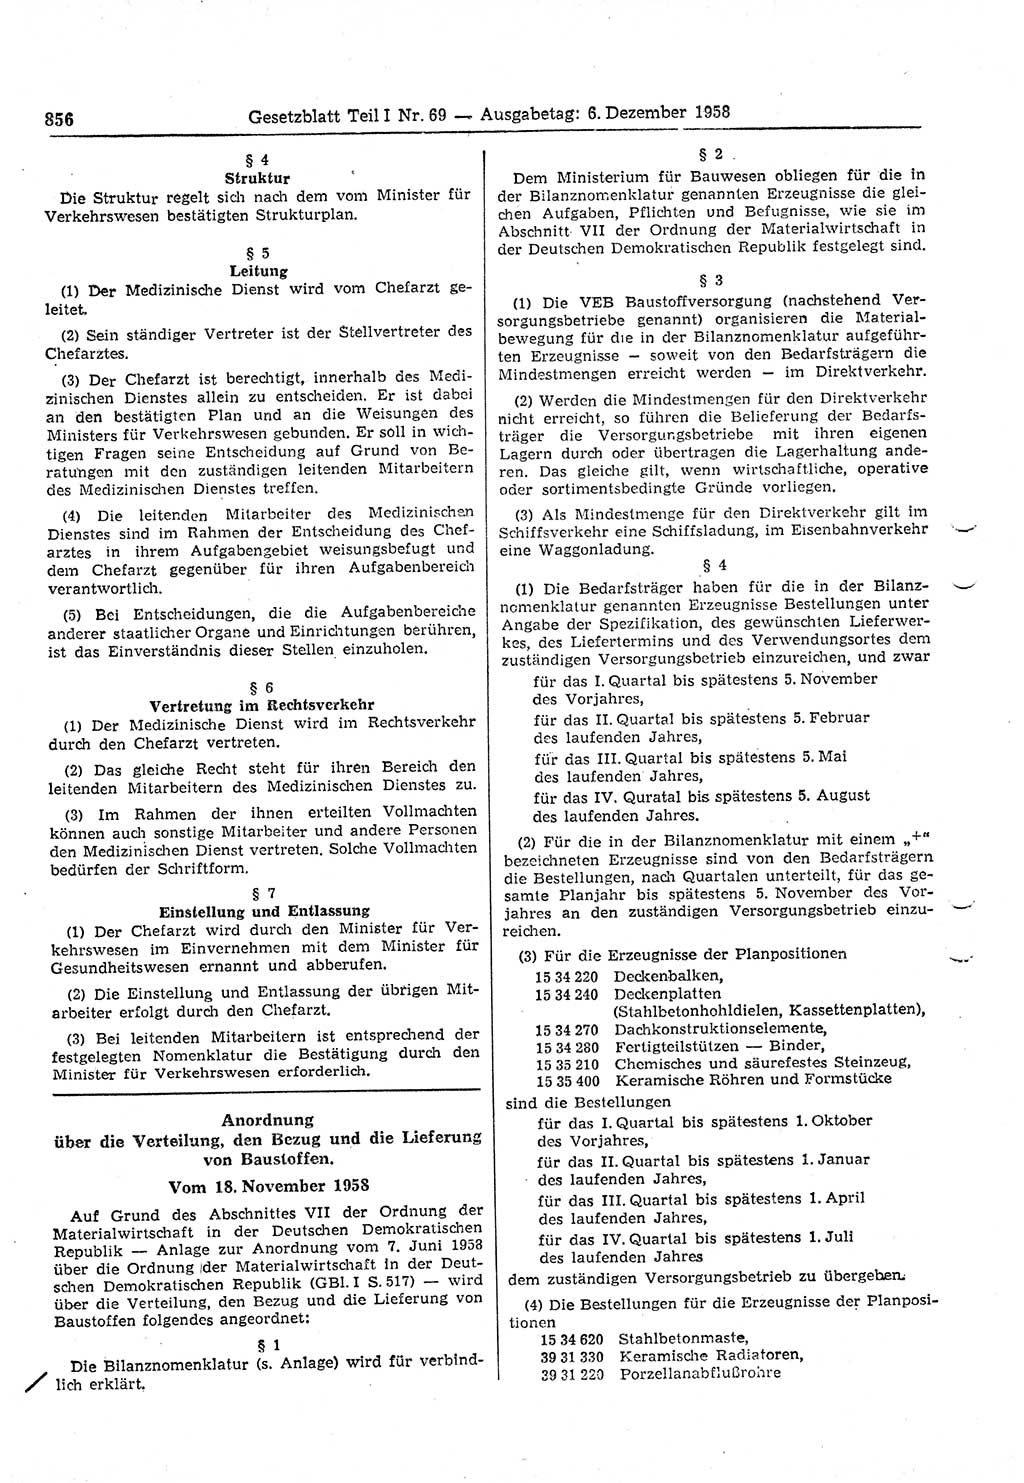 Gesetzblatt (GBl.) der Deutschen Demokratischen Republik (DDR) Teil Ⅰ 1958, Seite 856 (GBl. DDR Ⅰ 1958, S. 856)